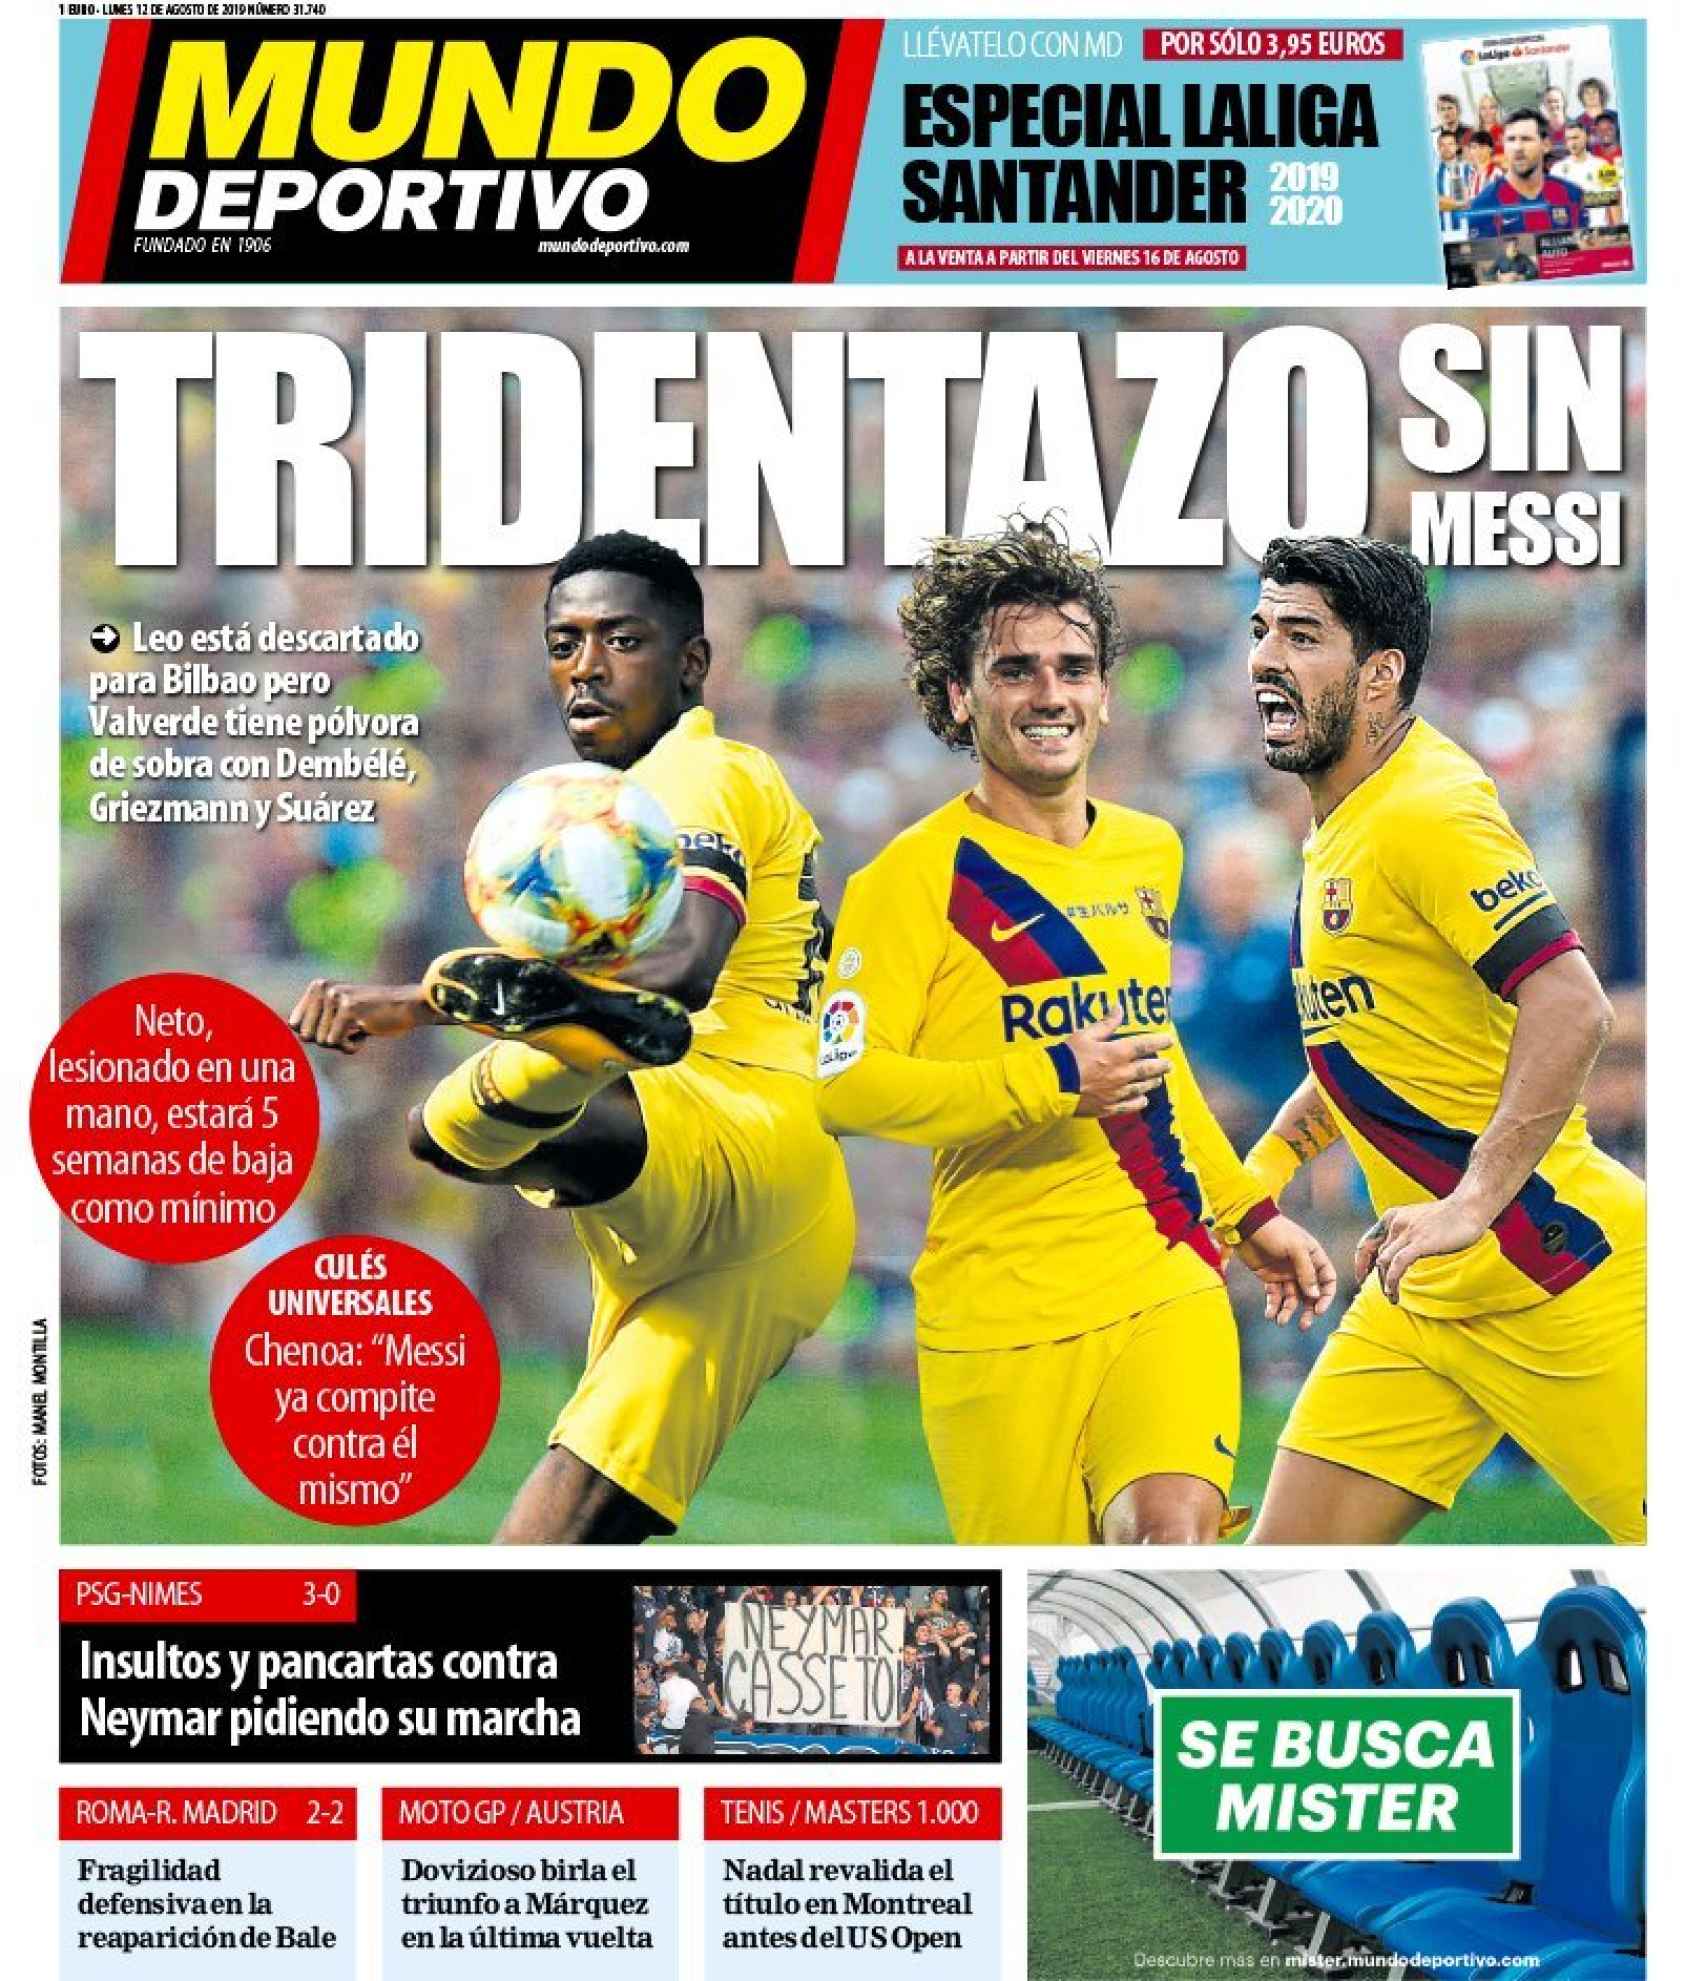 La portada del diario Mundo Deportivo (12/08/2019)